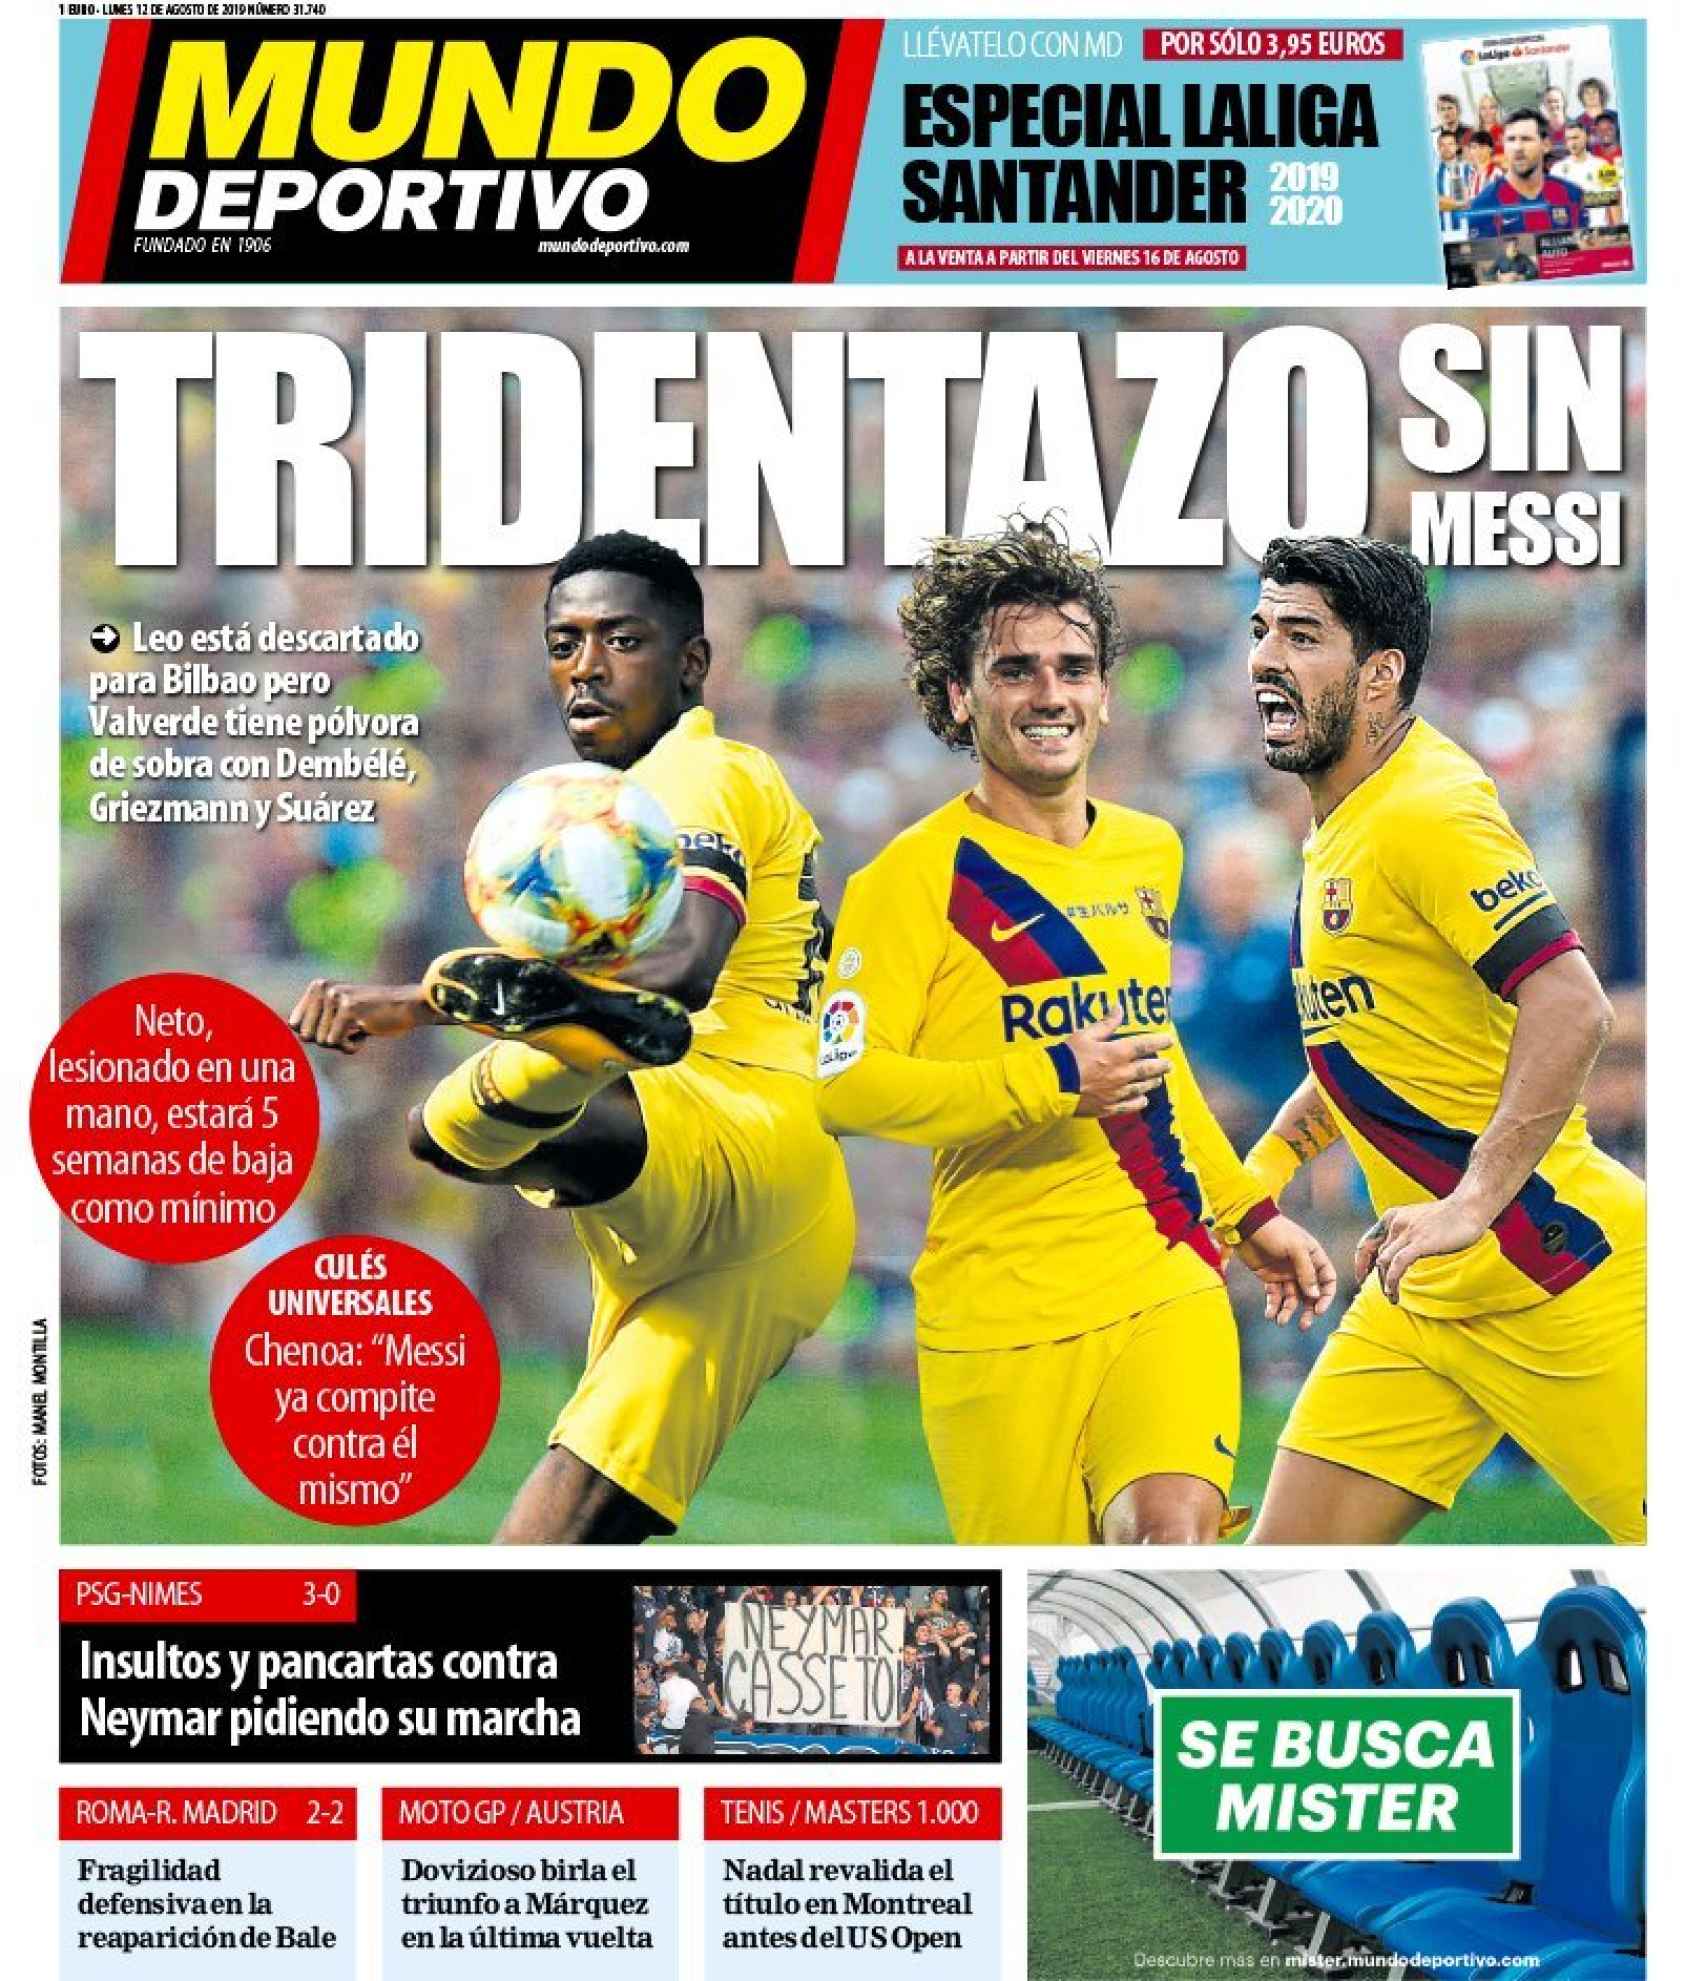 La portada del diario Mundo Deportivo (12/08/2019)